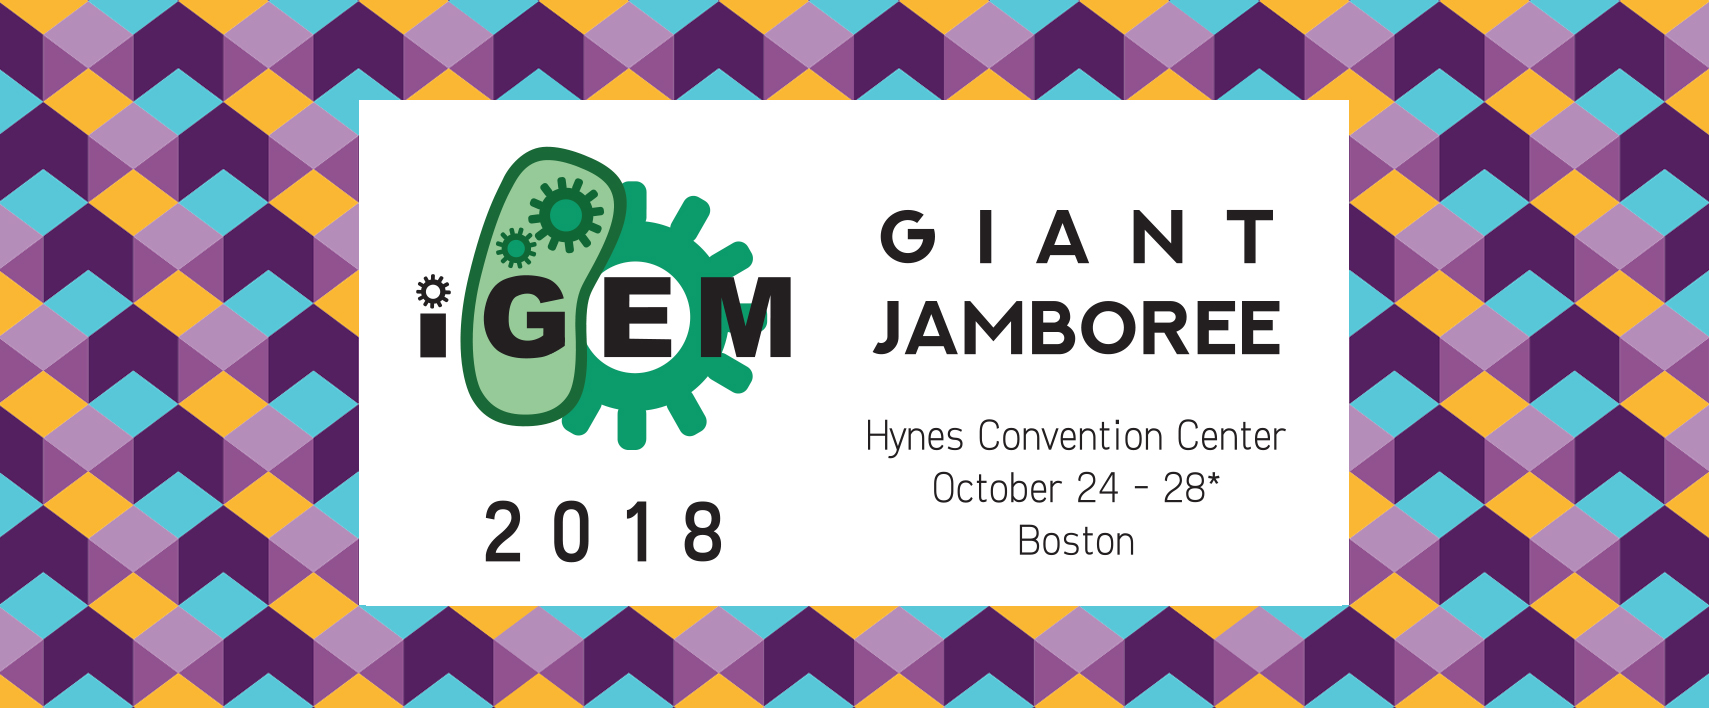 iGEM 2018 Giant Jamboree